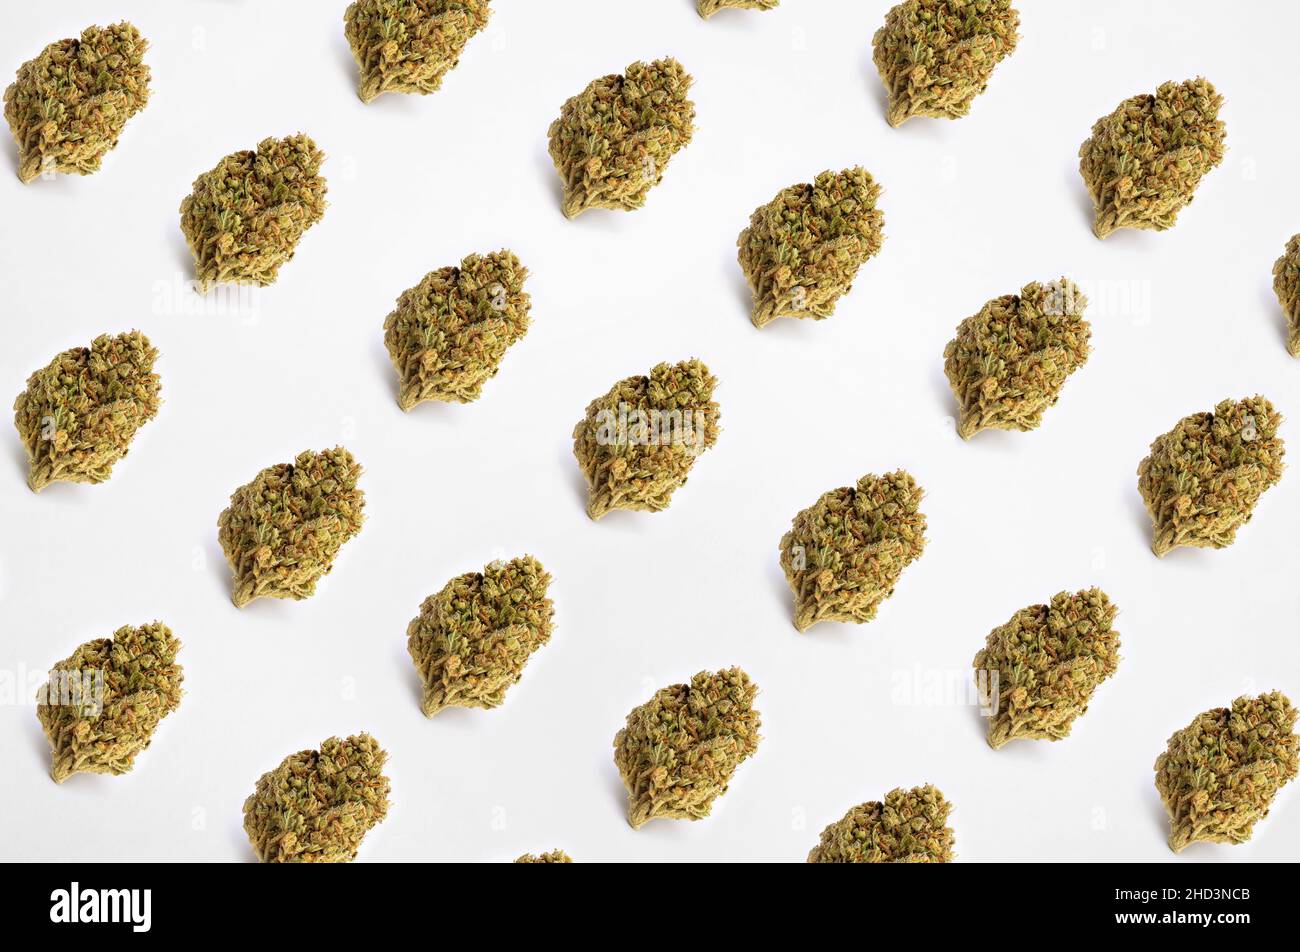 Modèle fait de cannabis séché isolé sur fond blanc Banque D'Images